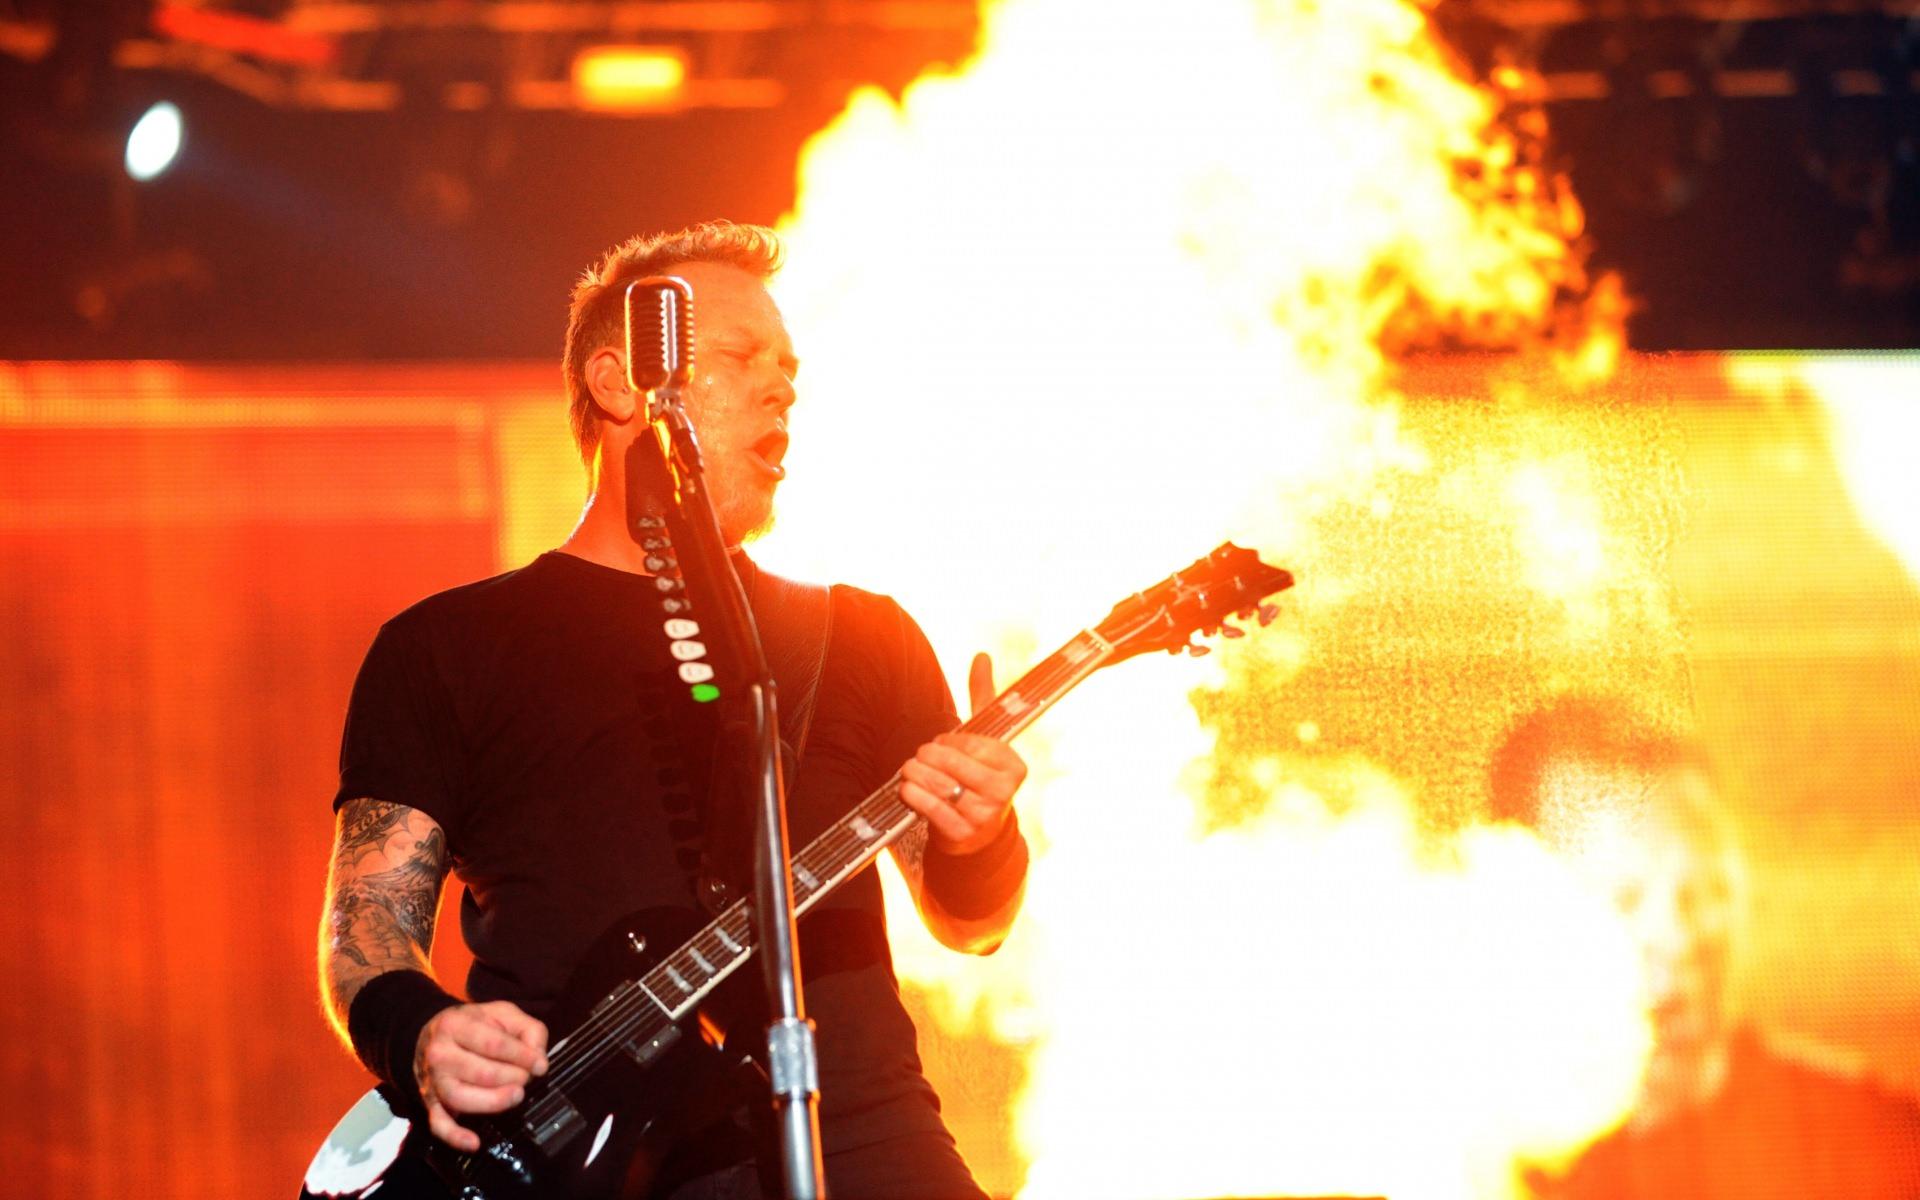 Metallica, Guitarist, Show, Fire, Microphone wallpaper